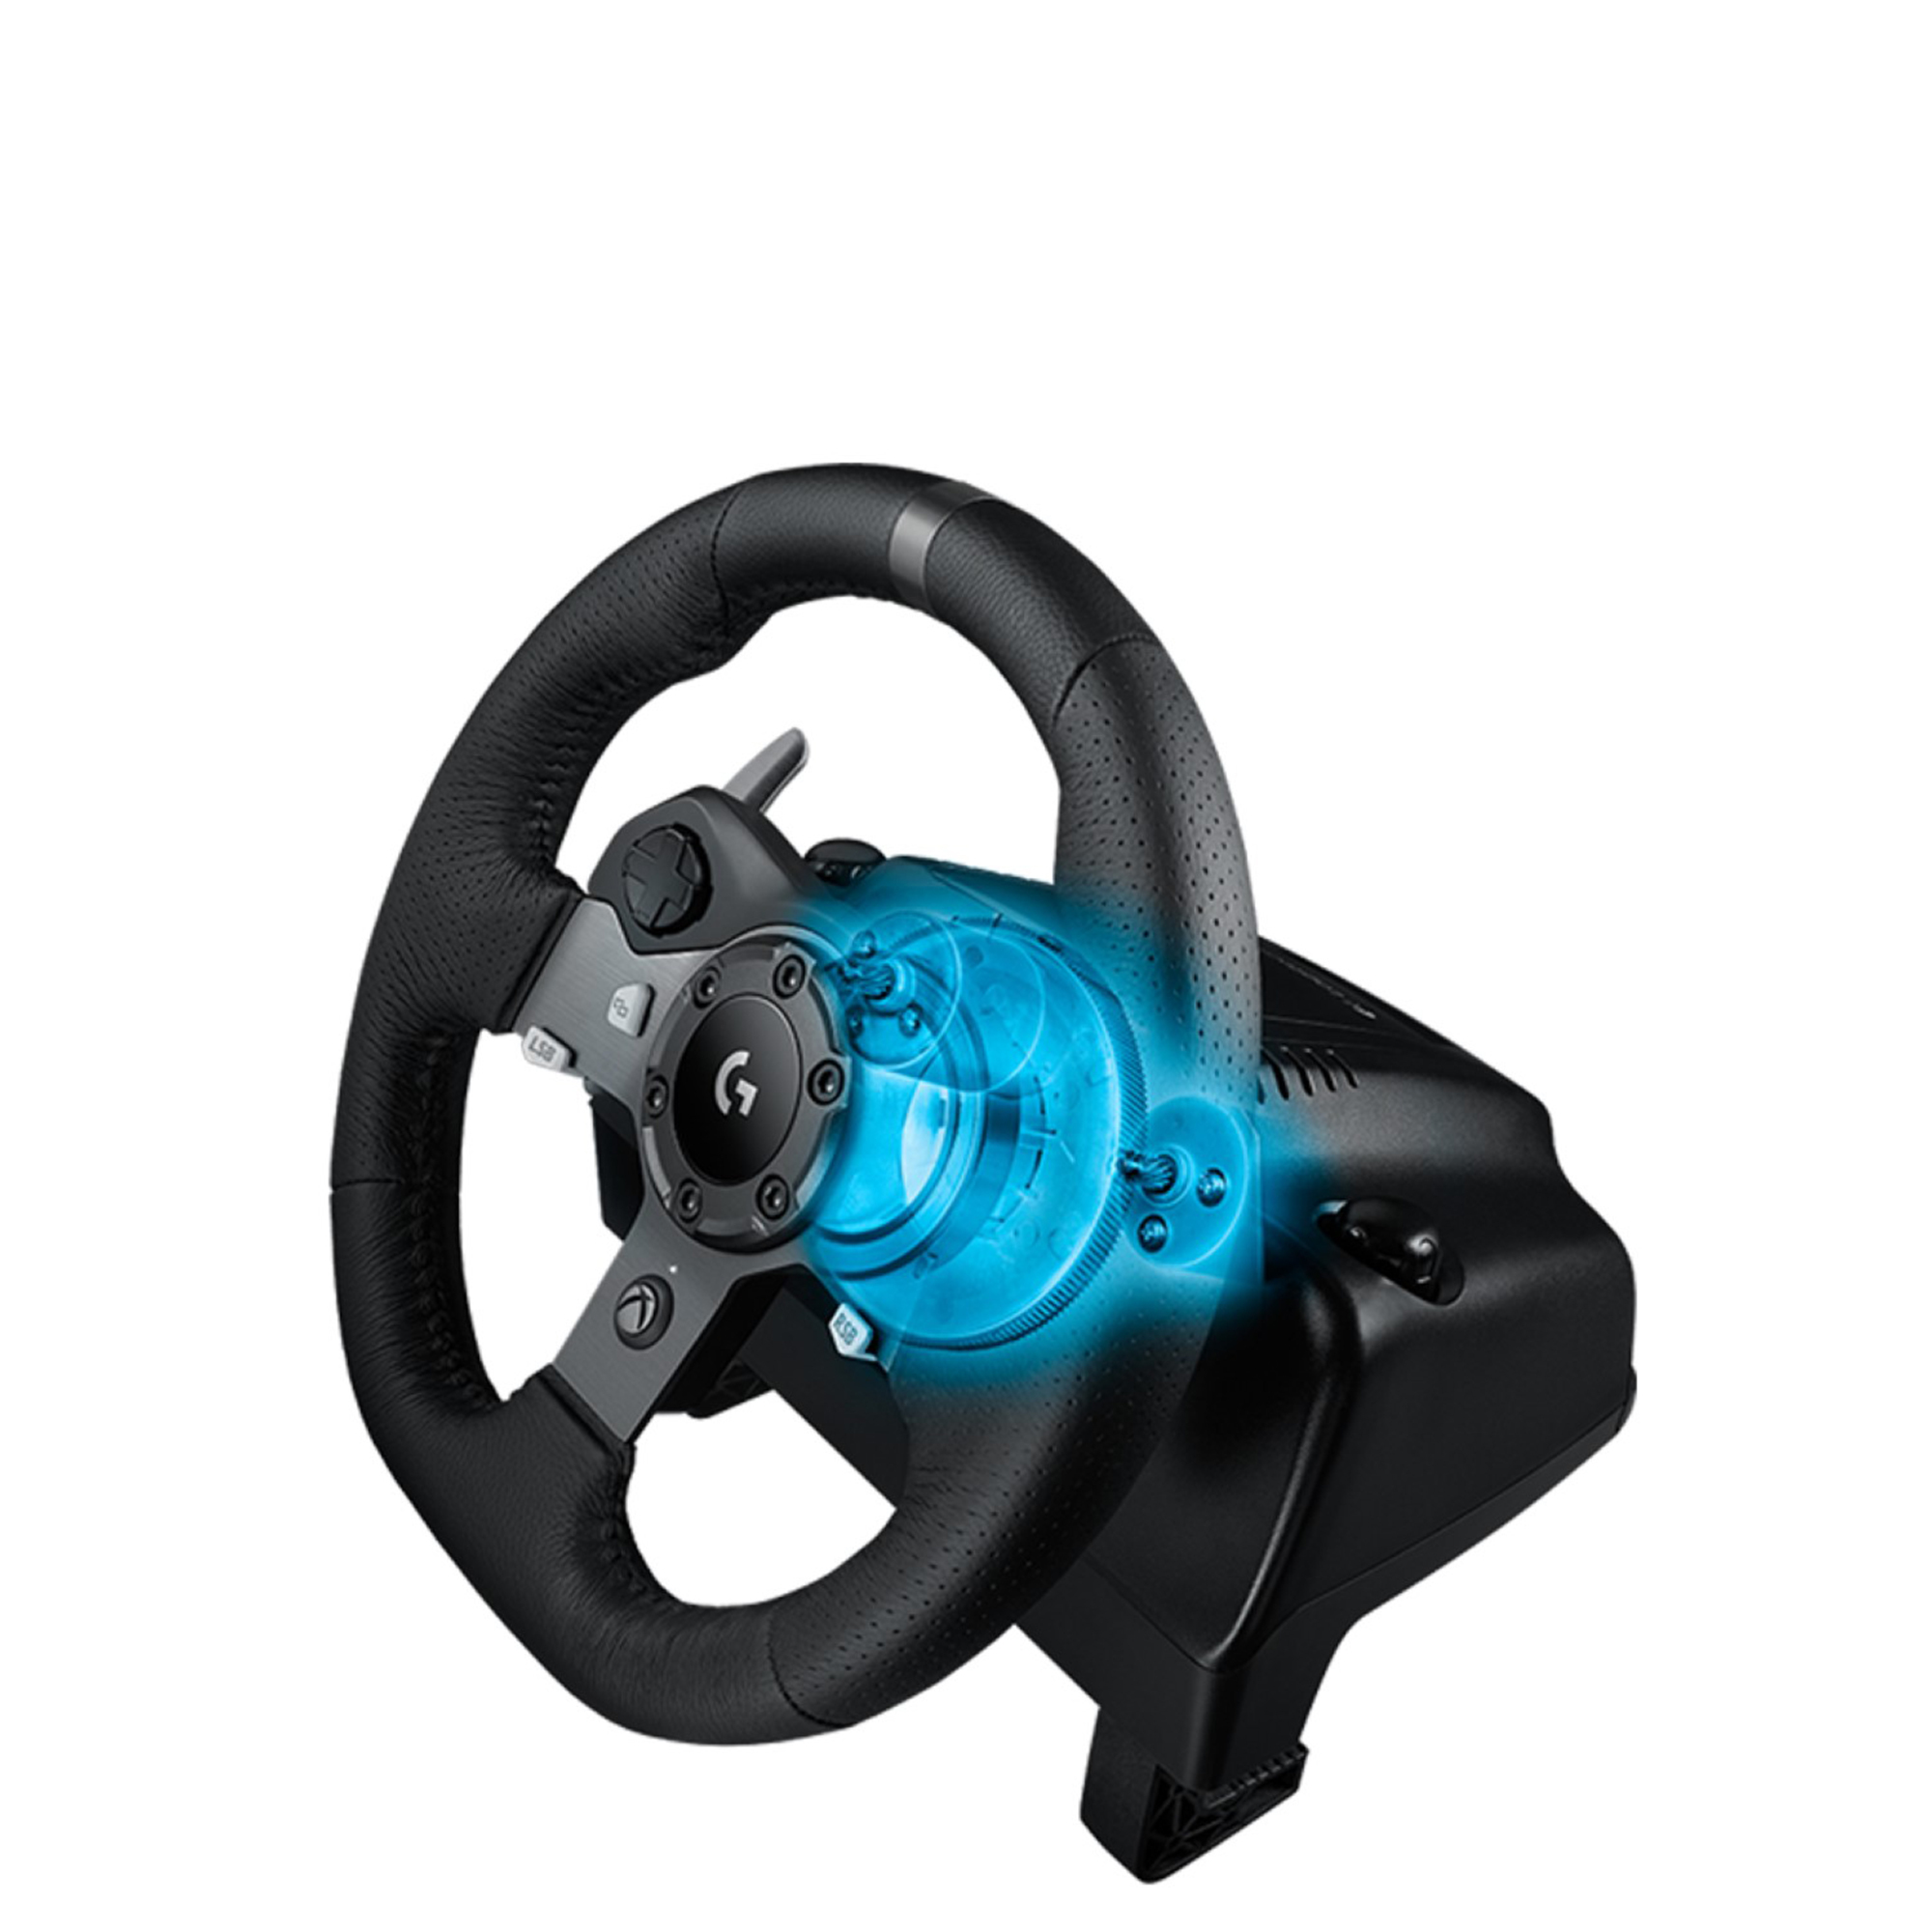 Volant de course G920 Driving Force de Logitech pour Xbox/PC